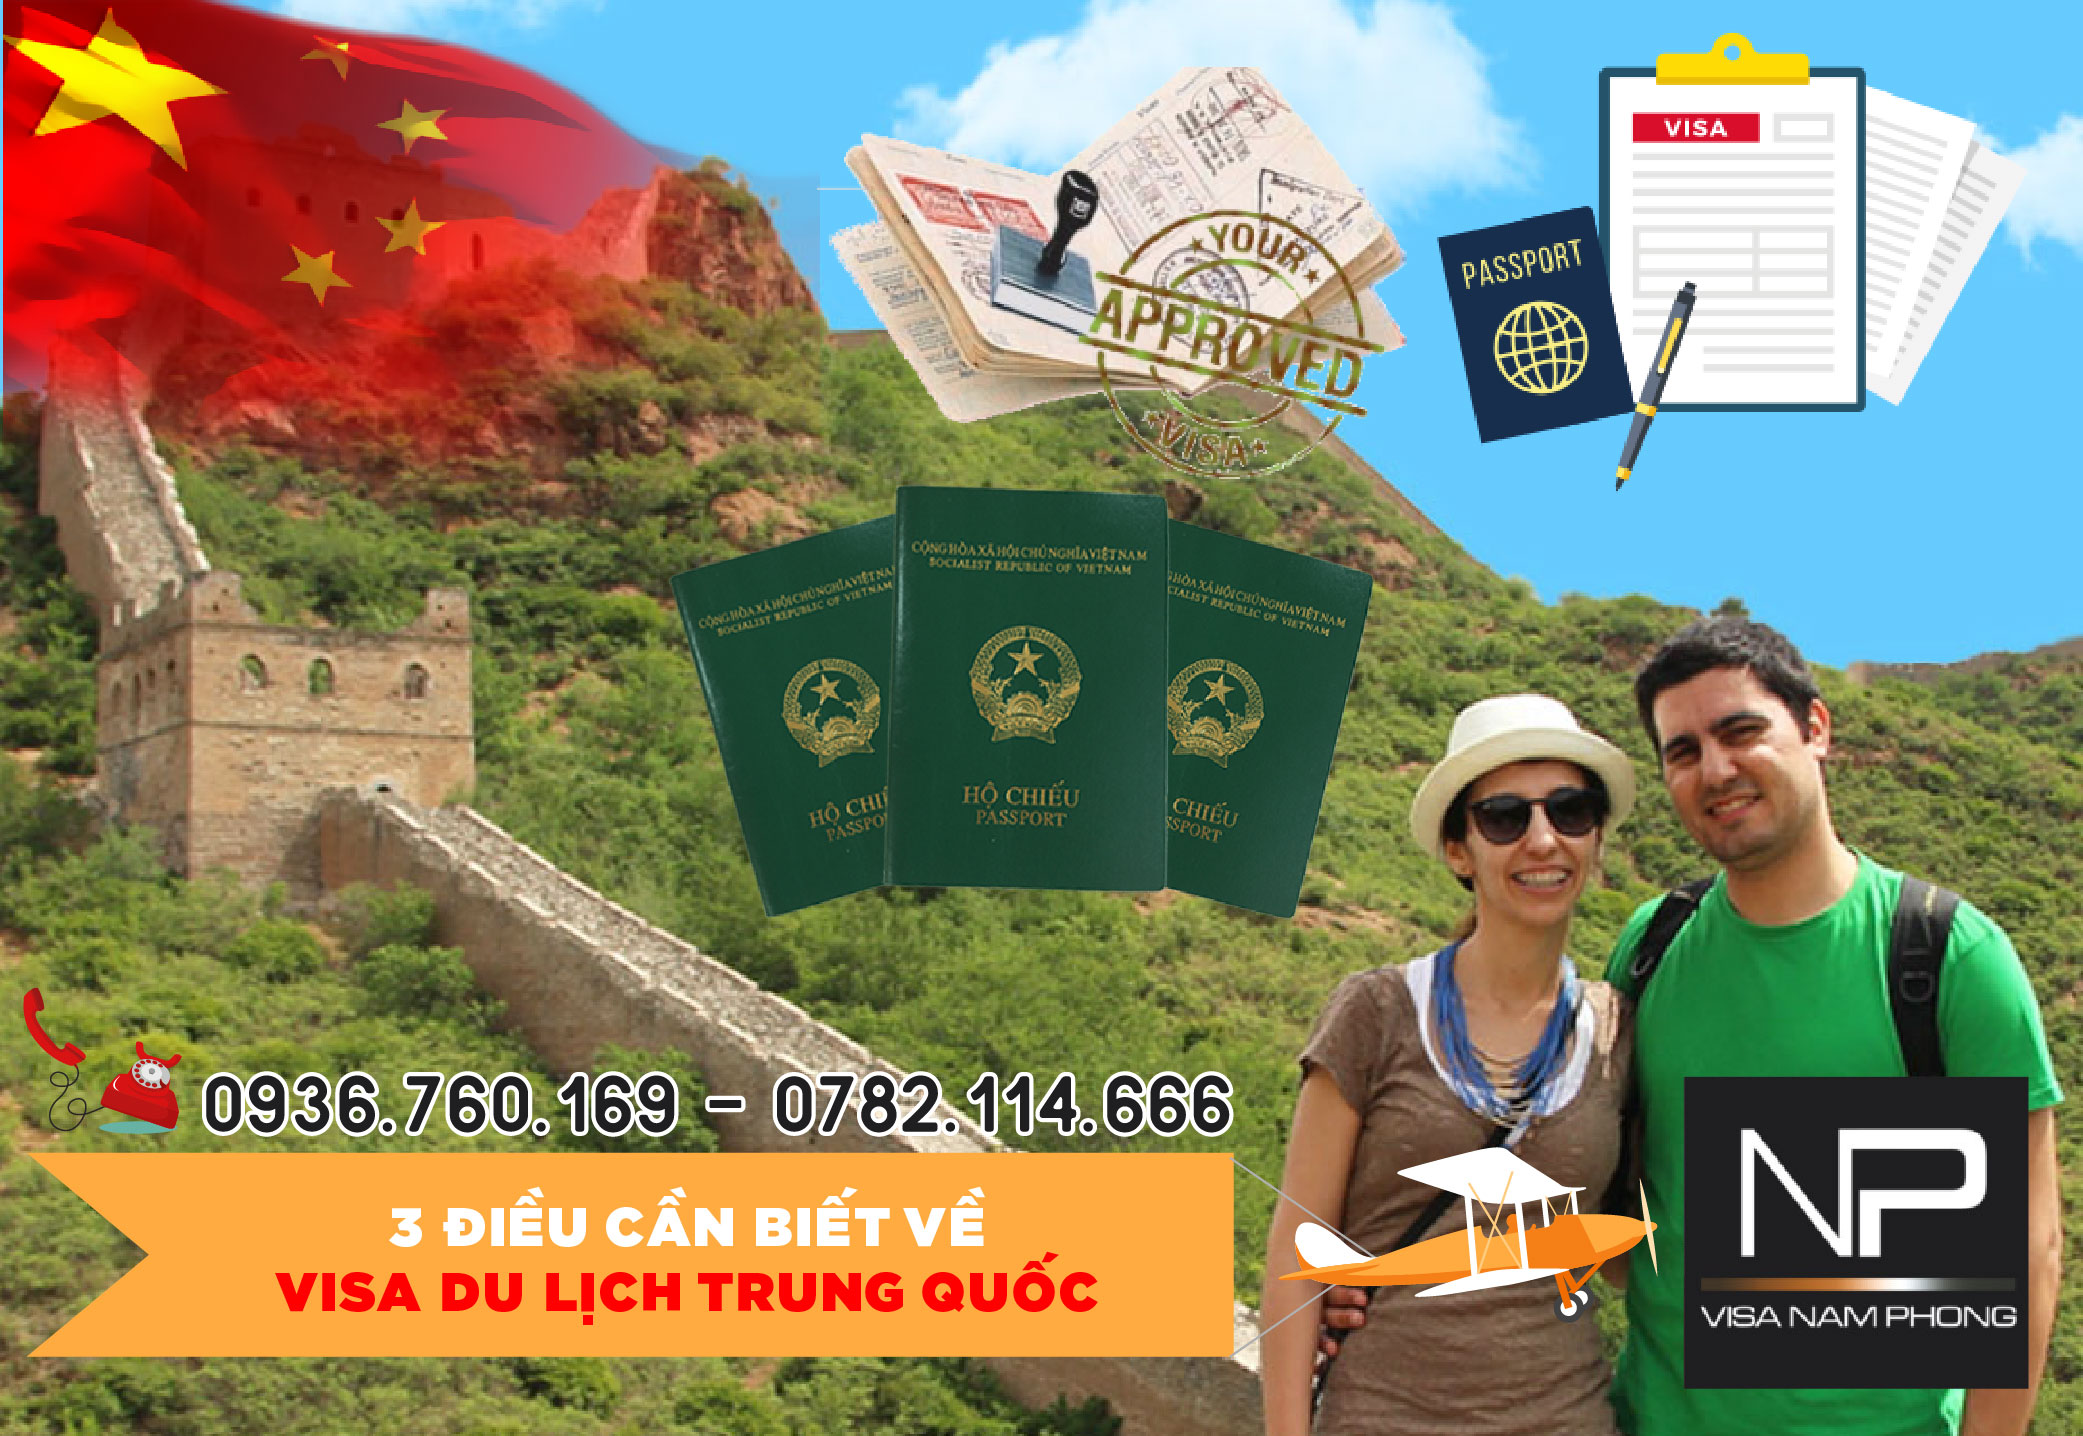 Tư cấn 3 điều cần biết về visa du lịch Trung Quốc tại Hải Phòng